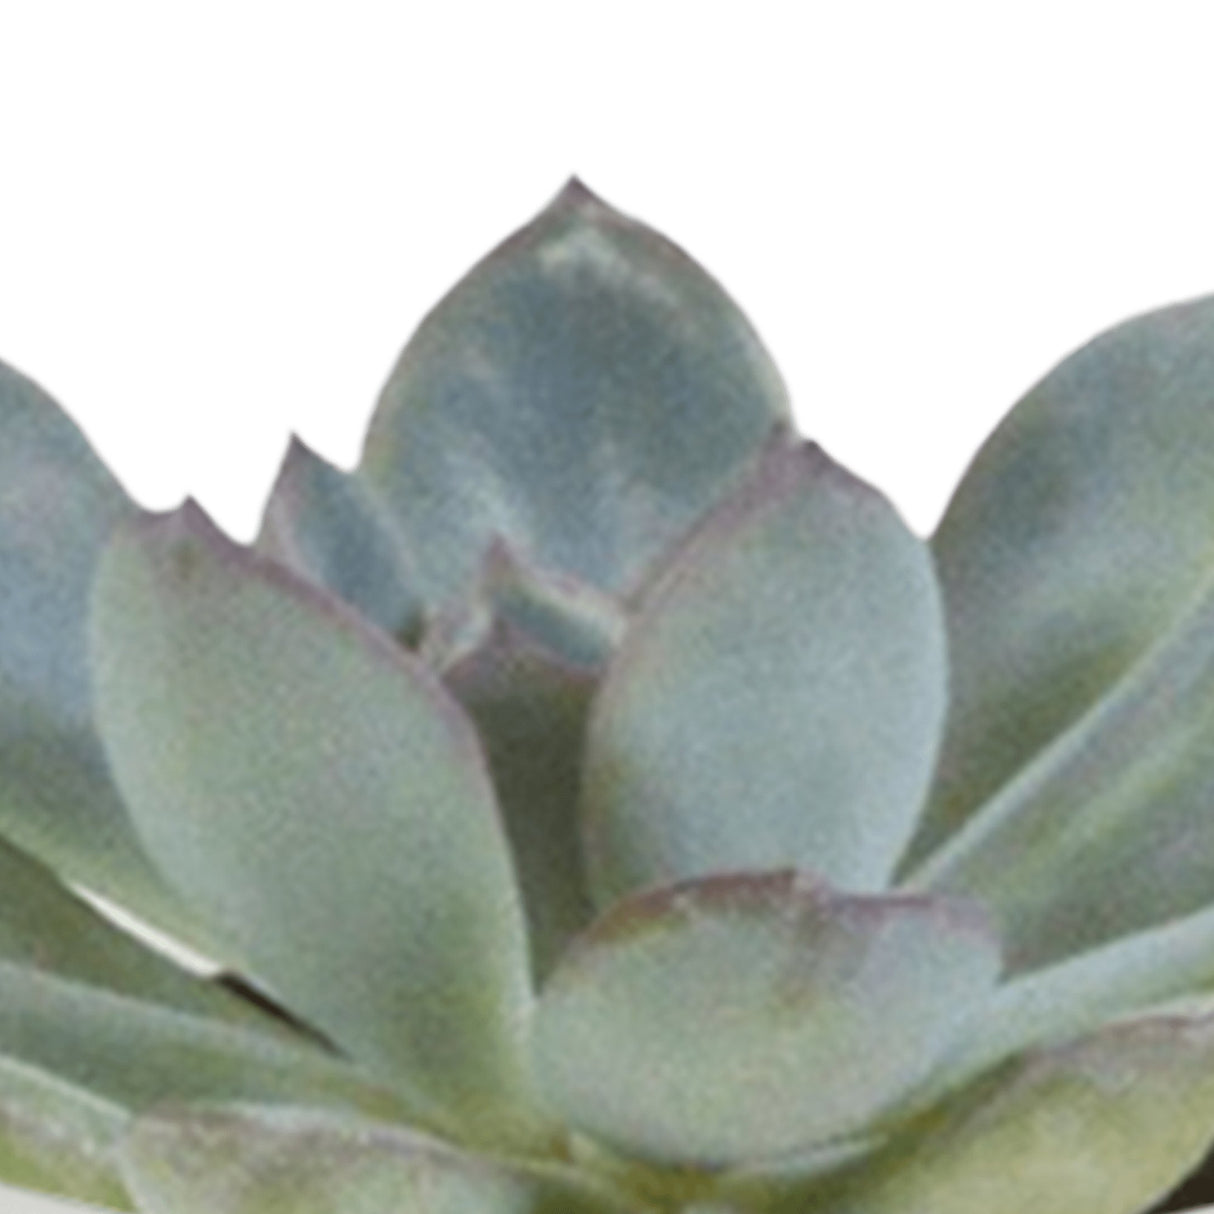 Livraison plante Coffret cactus et ses caches - pots blancs - Lot de 15, h13cm